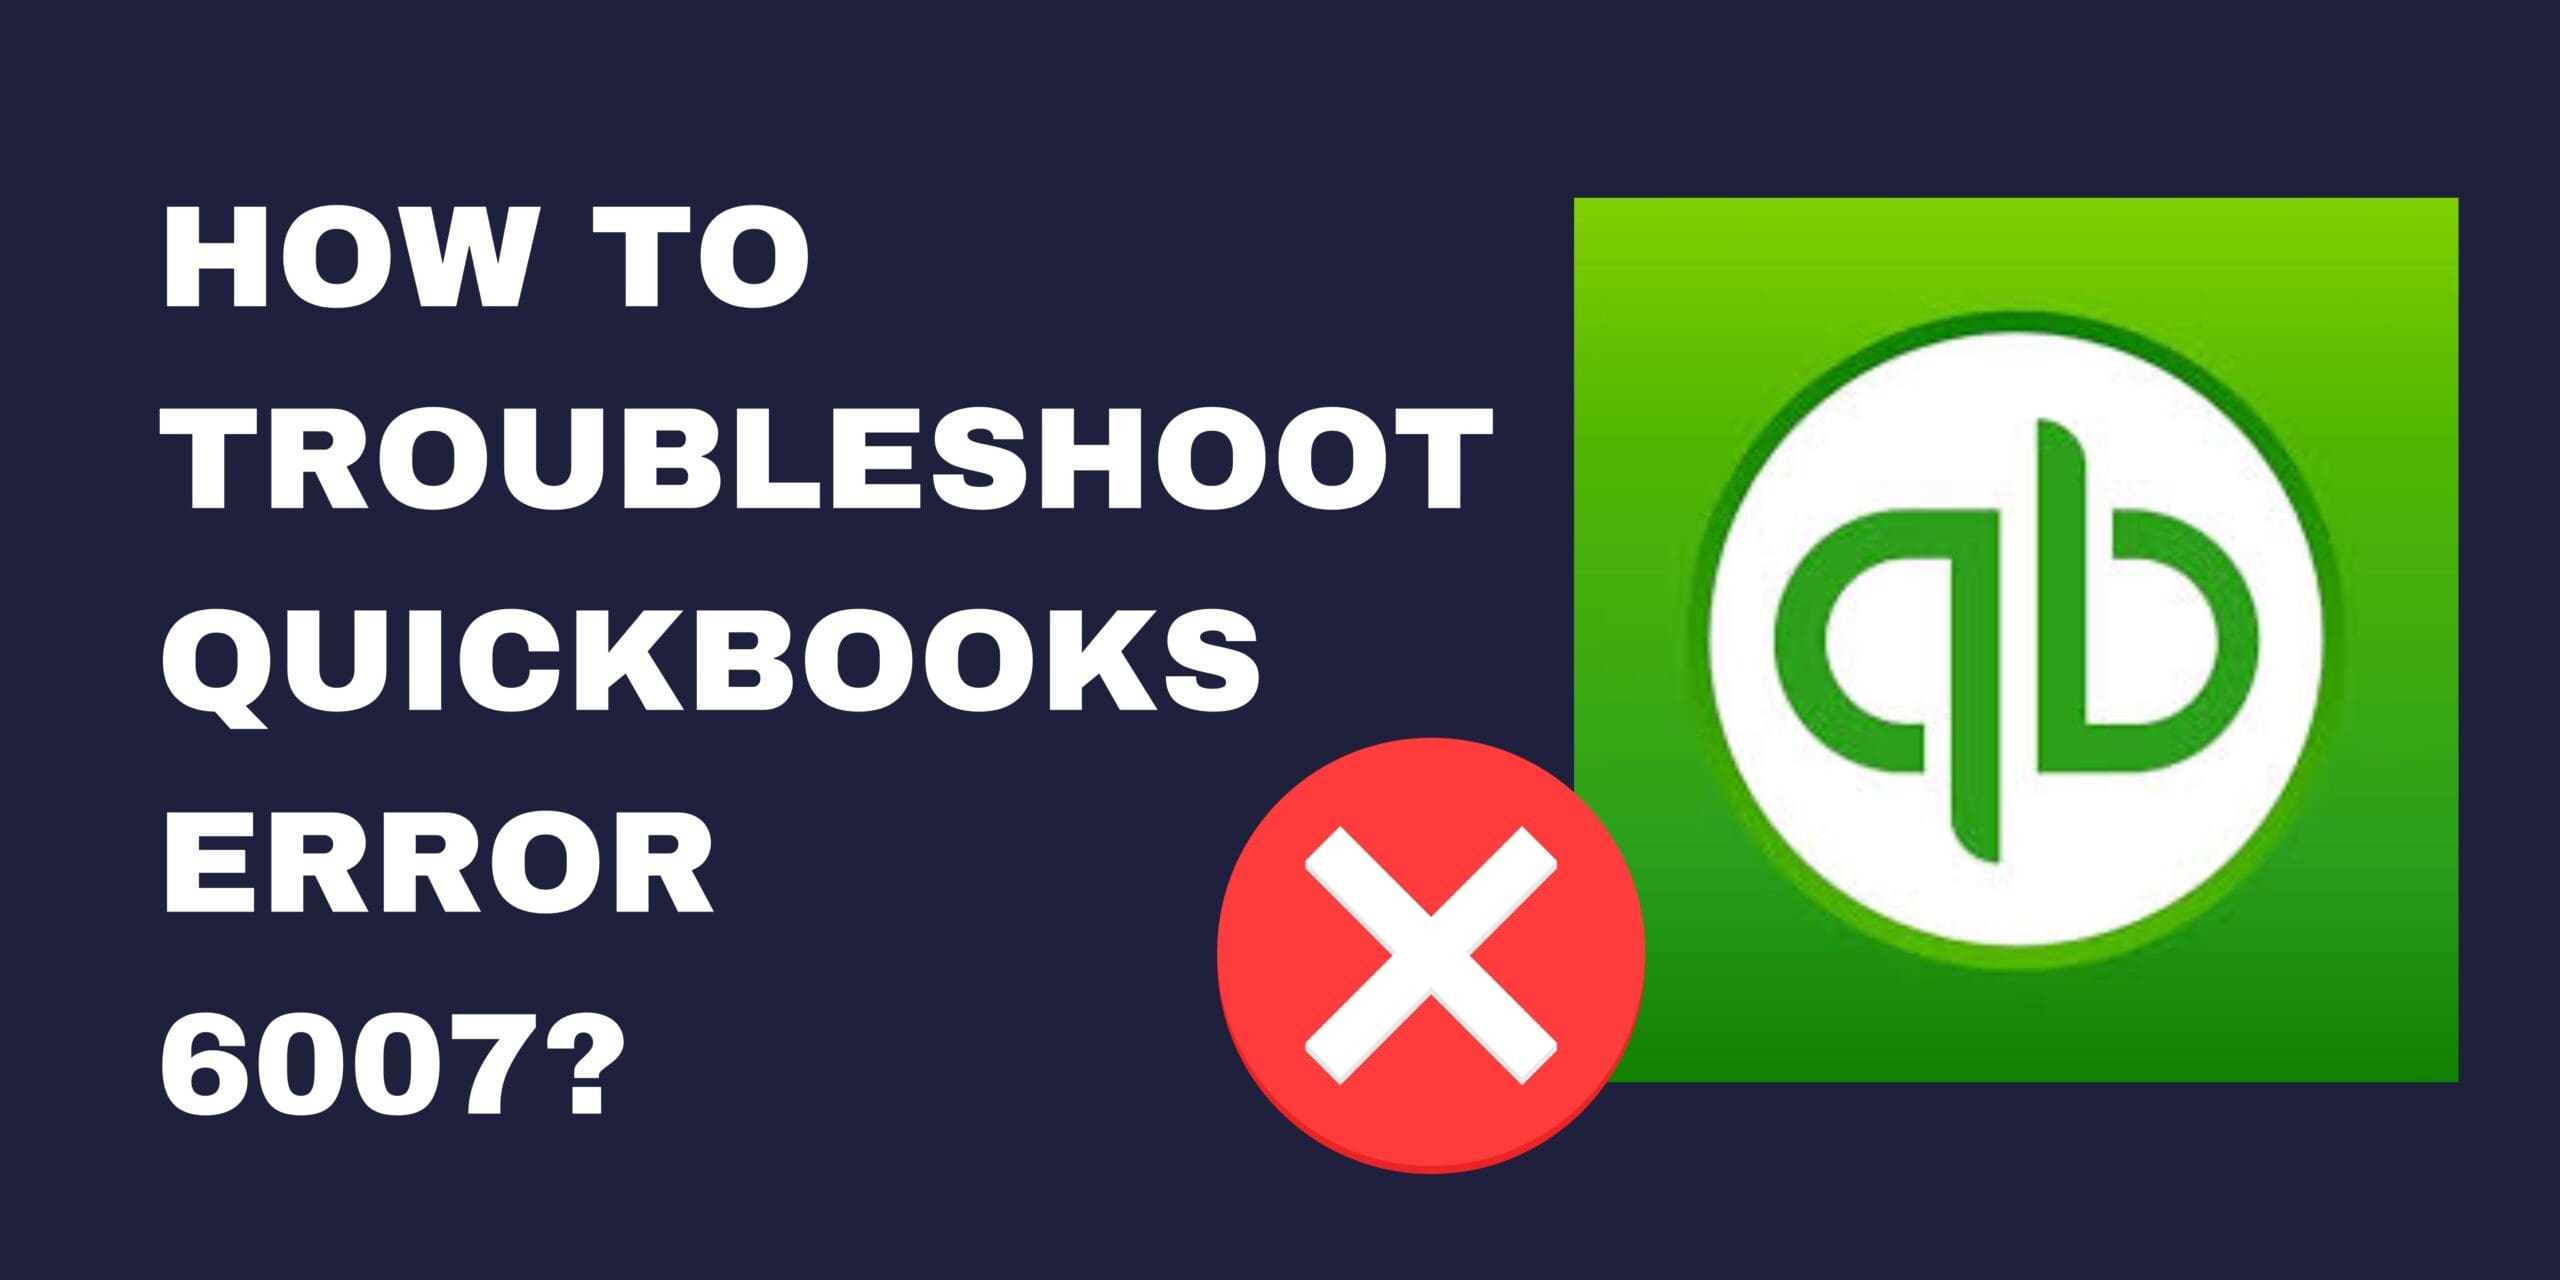 How to Troubleshoot QuickBooks Error 6007?